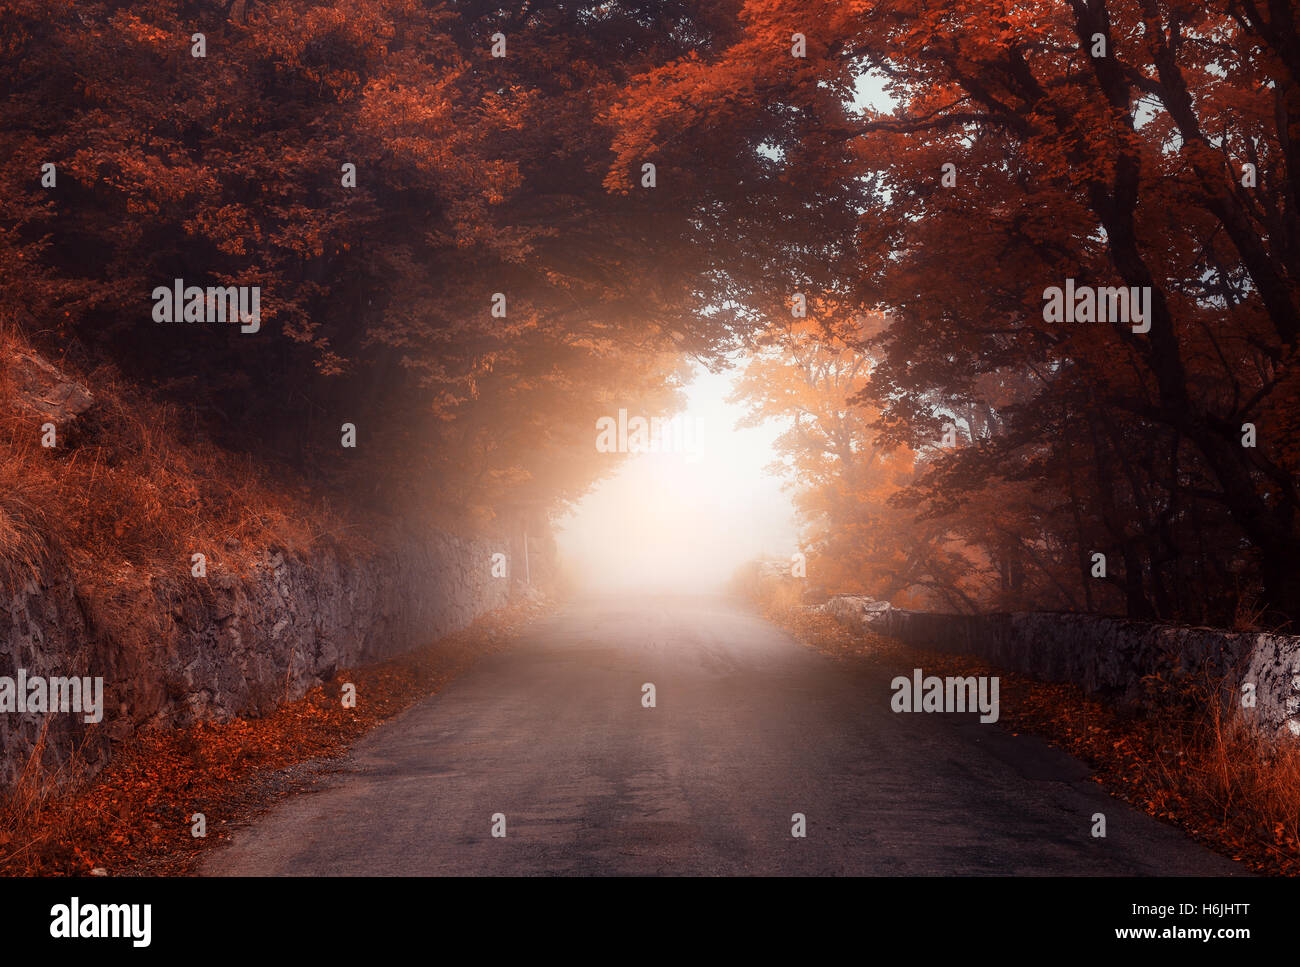 Místico bosque de otoño con la carretera en la niebla. Caída brumoso bosque. El colorido paisaje con árboles, caminos rurales, follaje naranja y rojo. Foto de stock